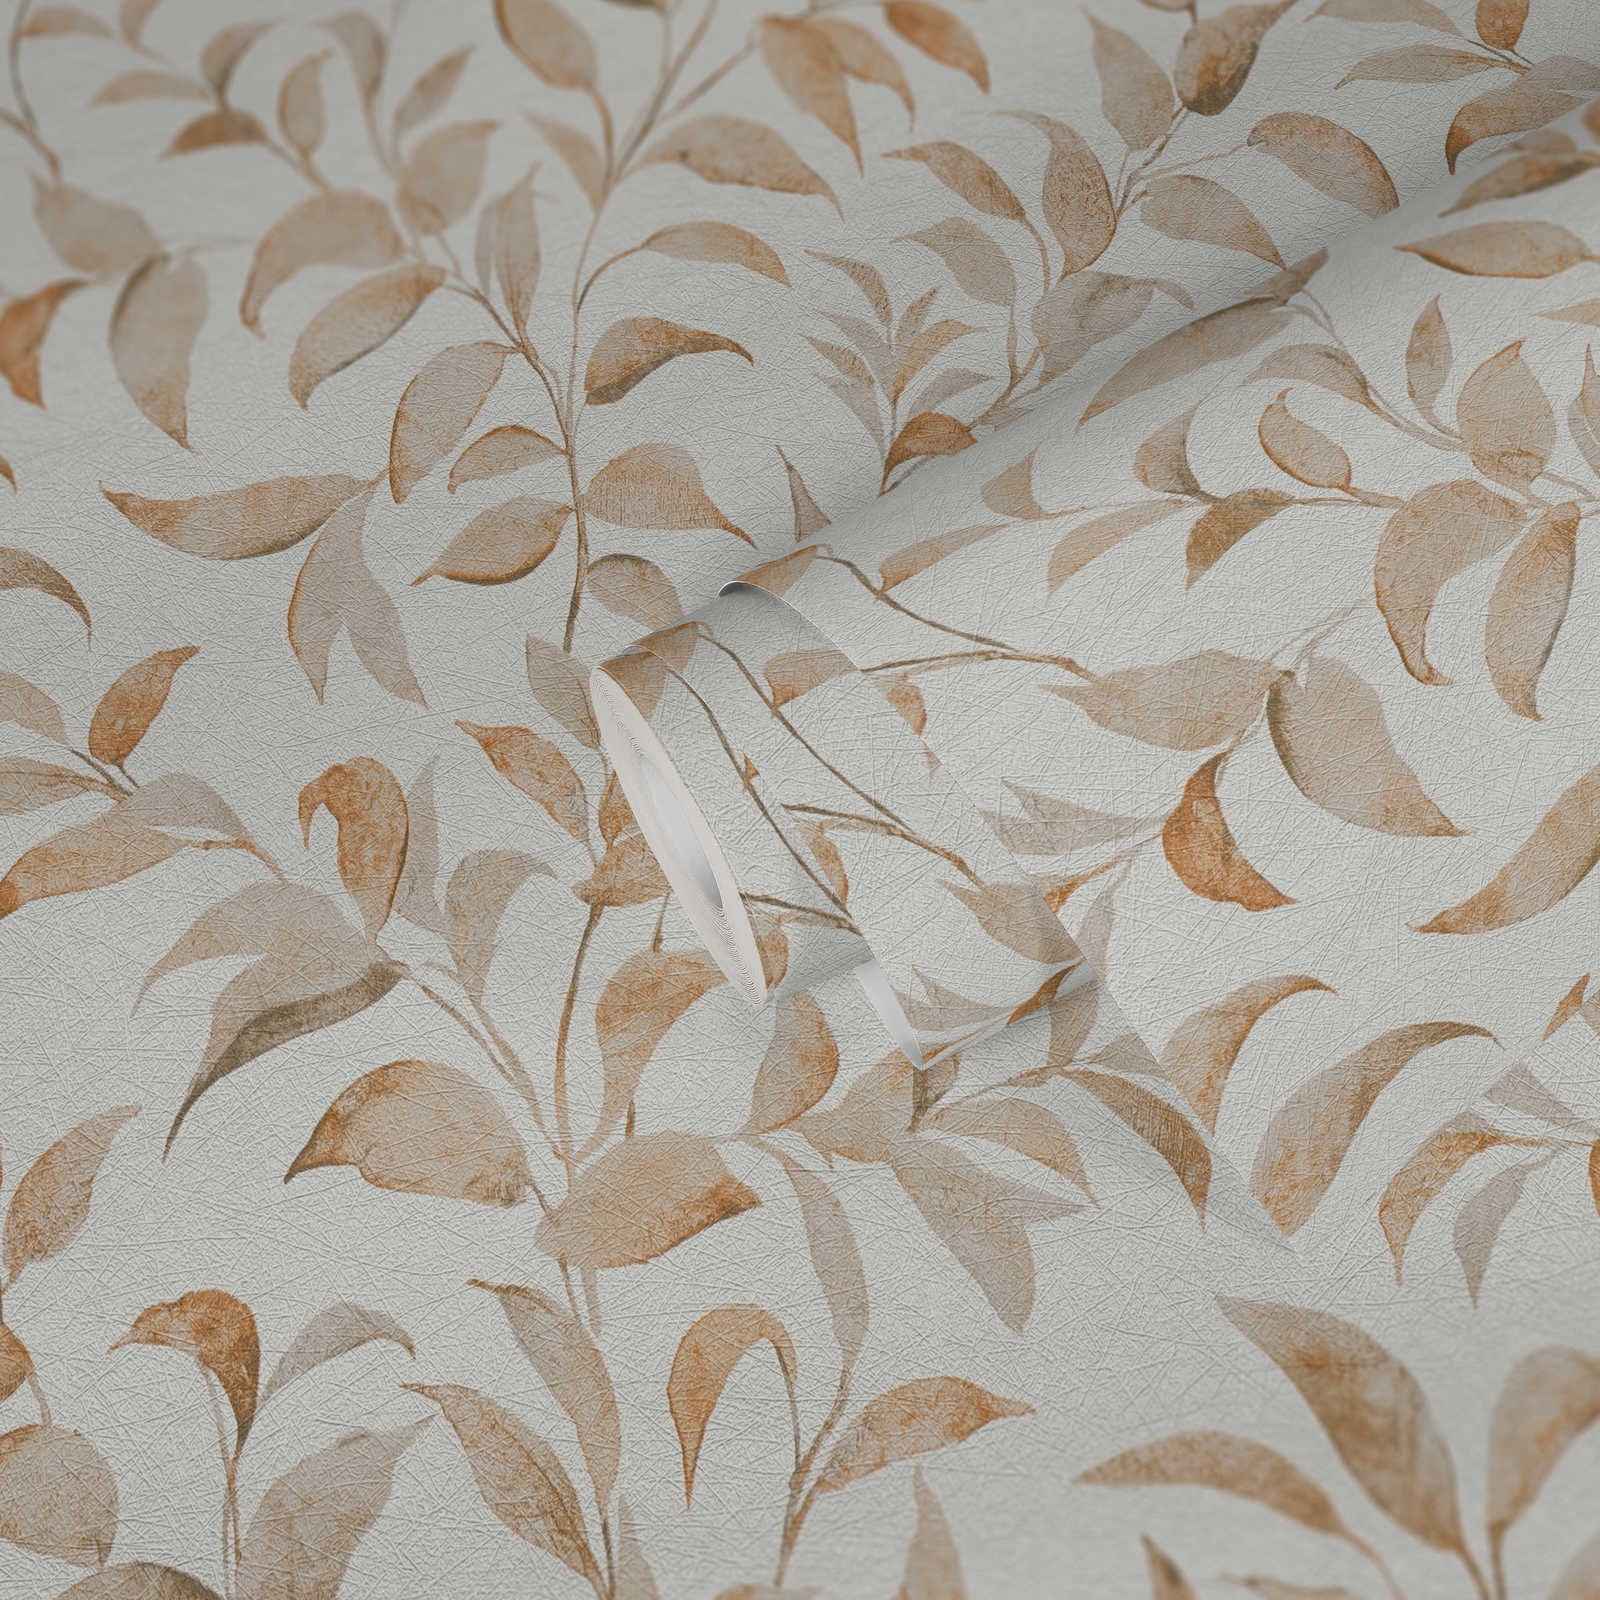             Blätter-Tapete floral schimmernd strukturiert – Weiß, orange
        